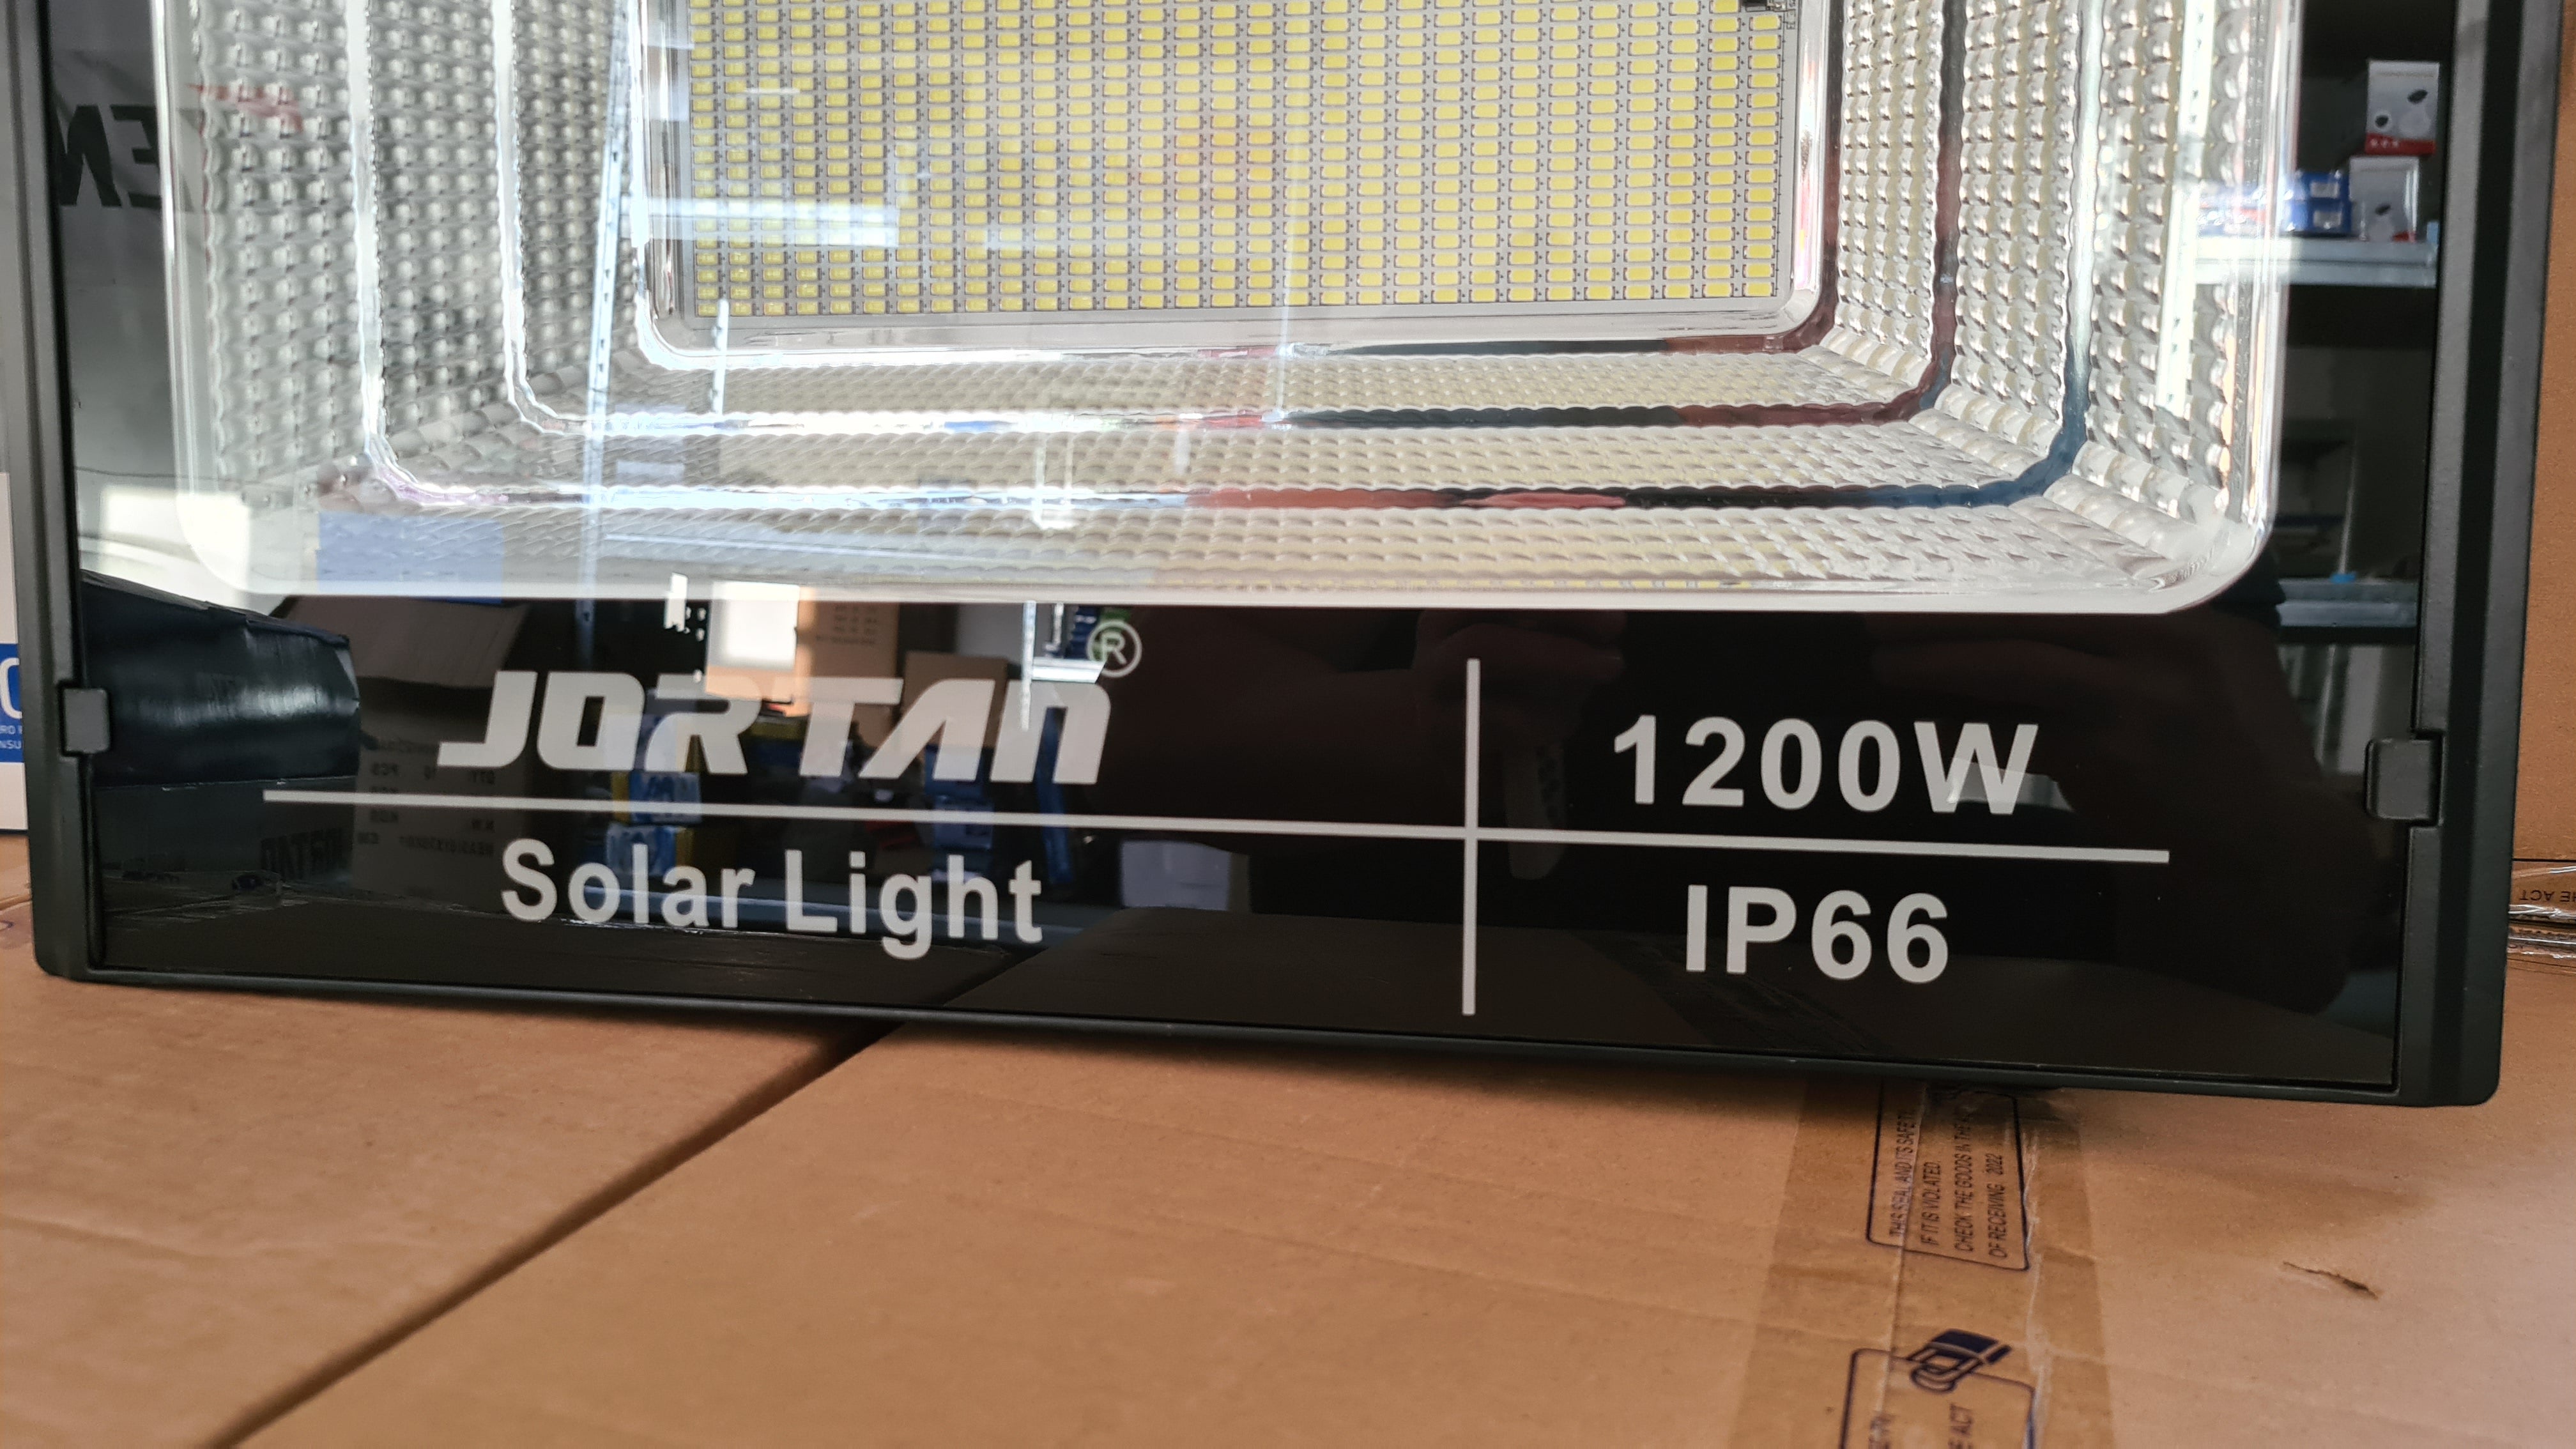 Proiector Solar Jortan 1200W/500W/400W/200W/100W/50W Lampa Incarcare Solara si Panou Solar